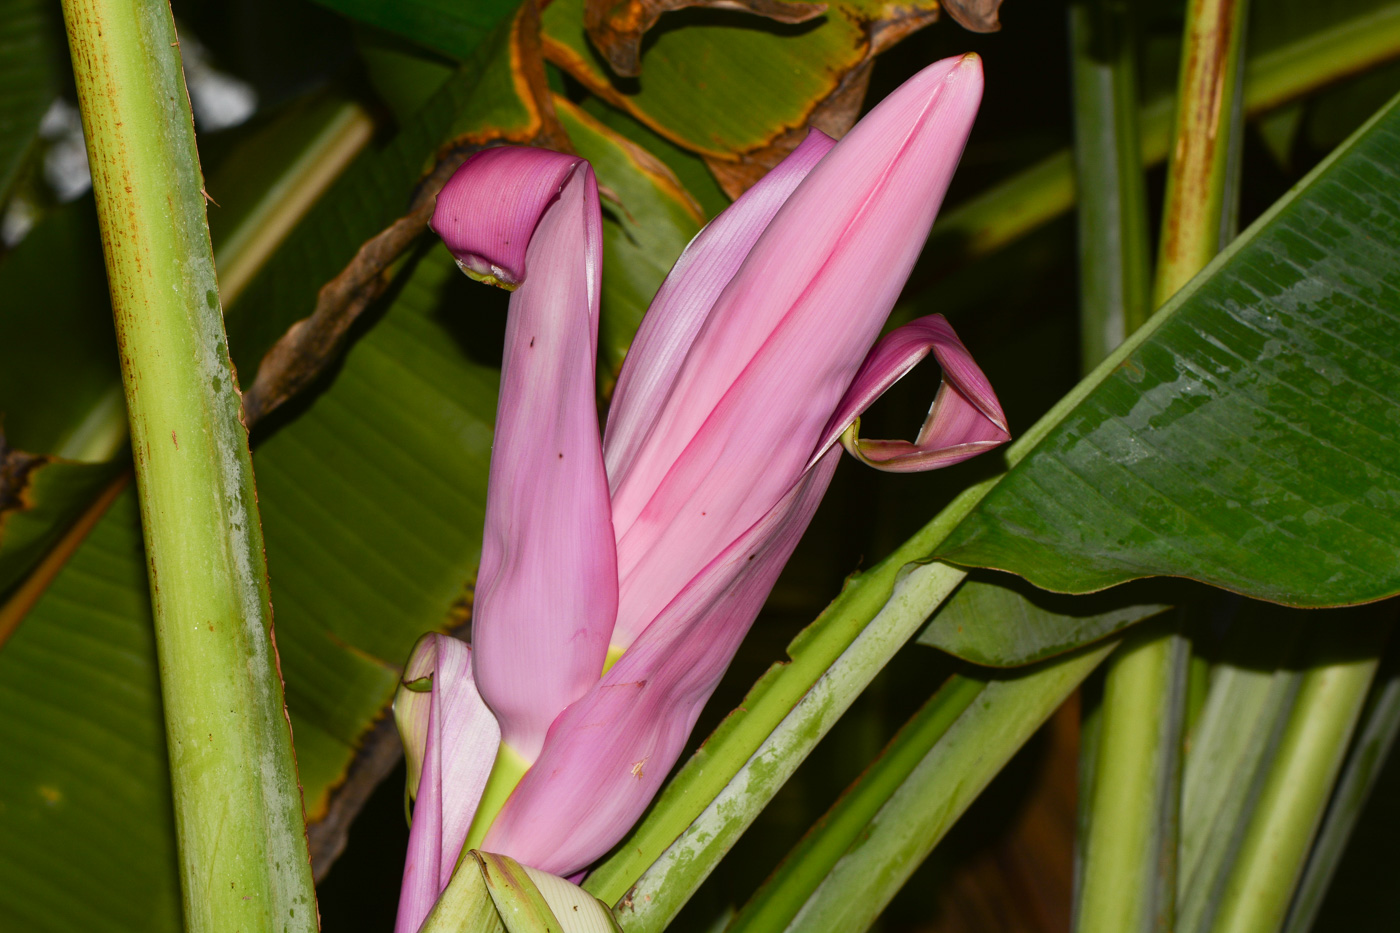 Image of genus Musa specimen.